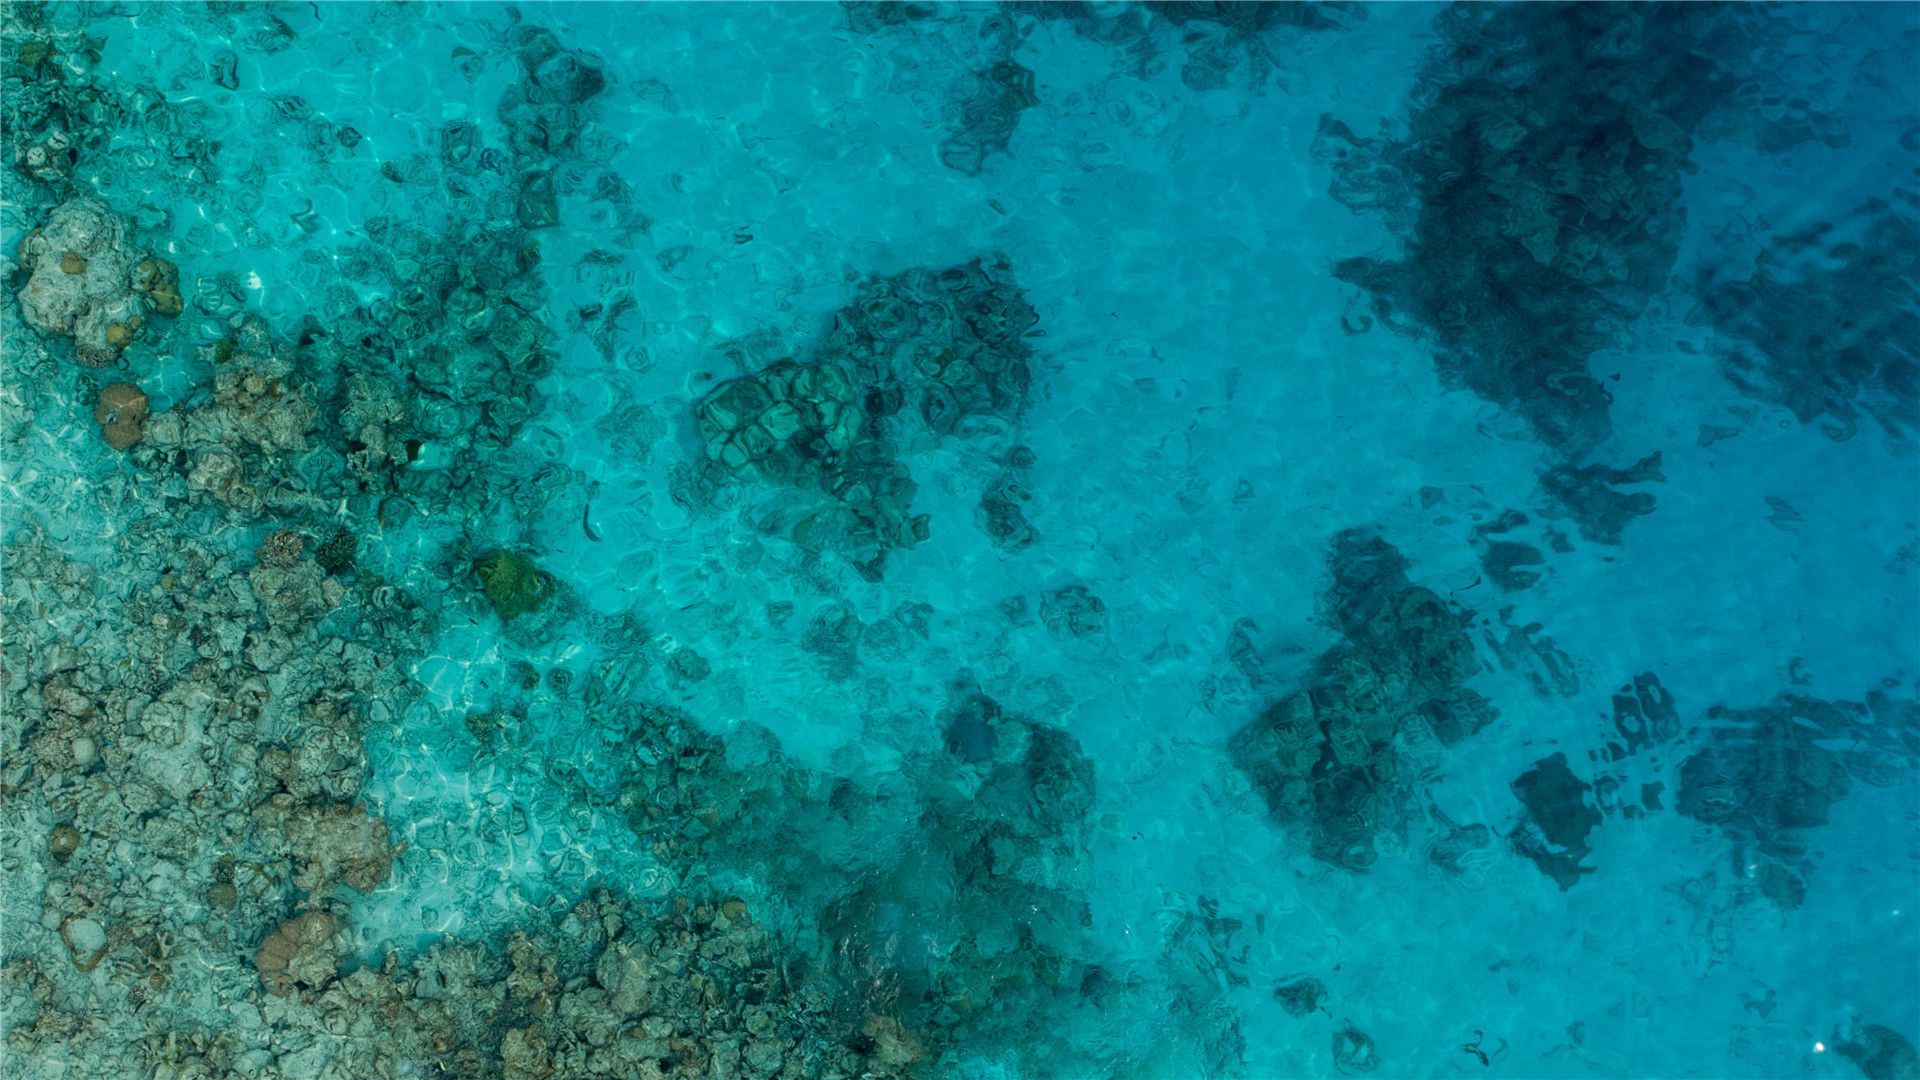 碧波荡漾，蓝天大海，太漂亮了，马尔代夫群岛超美景色风光图片